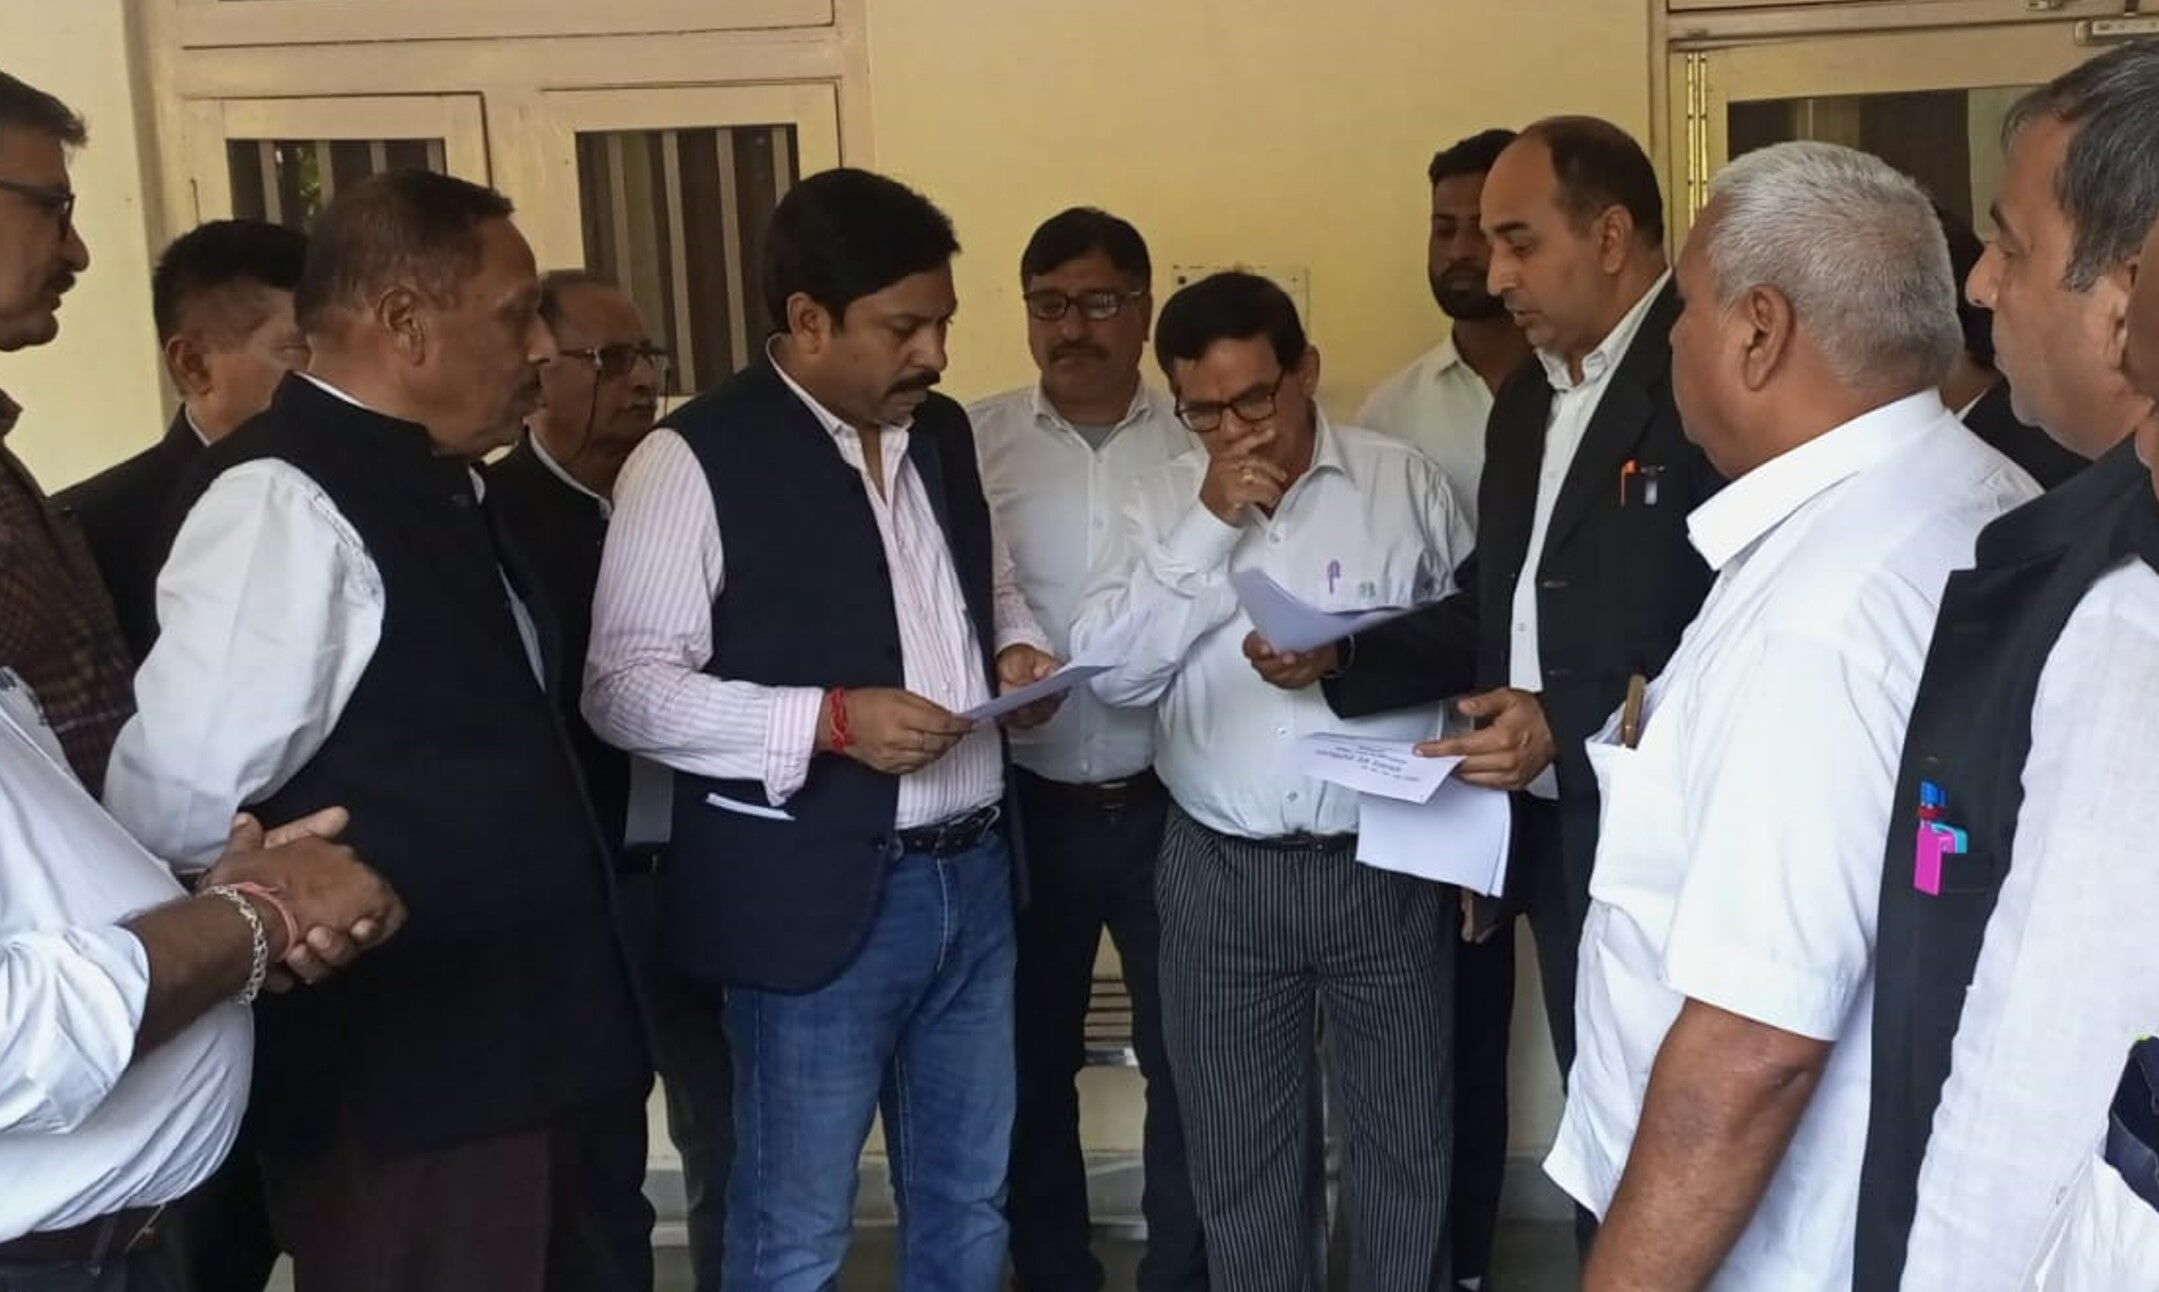 Ramnagar News: नैनीताल से उत्तराखंड हाई कोर्ट को रामनगर शिफ्ट करने की मांग, अधिवक्ताओं ने बैठक के बाद भेजे ज्ञापन